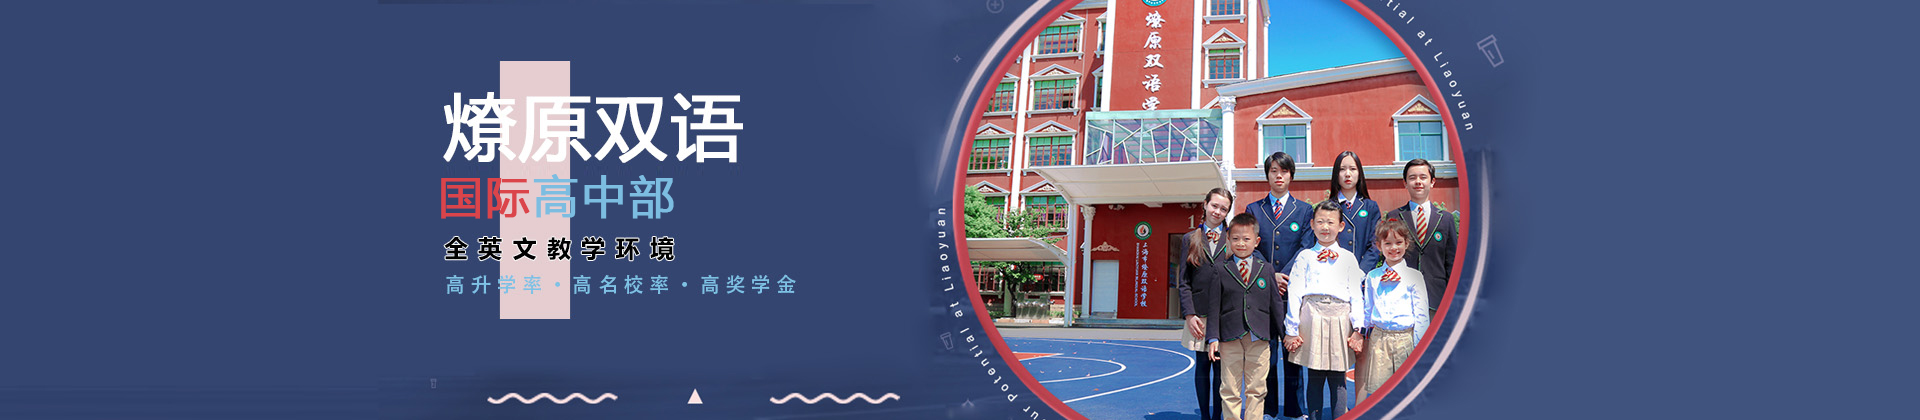 上海燎原双语学校国际高中部